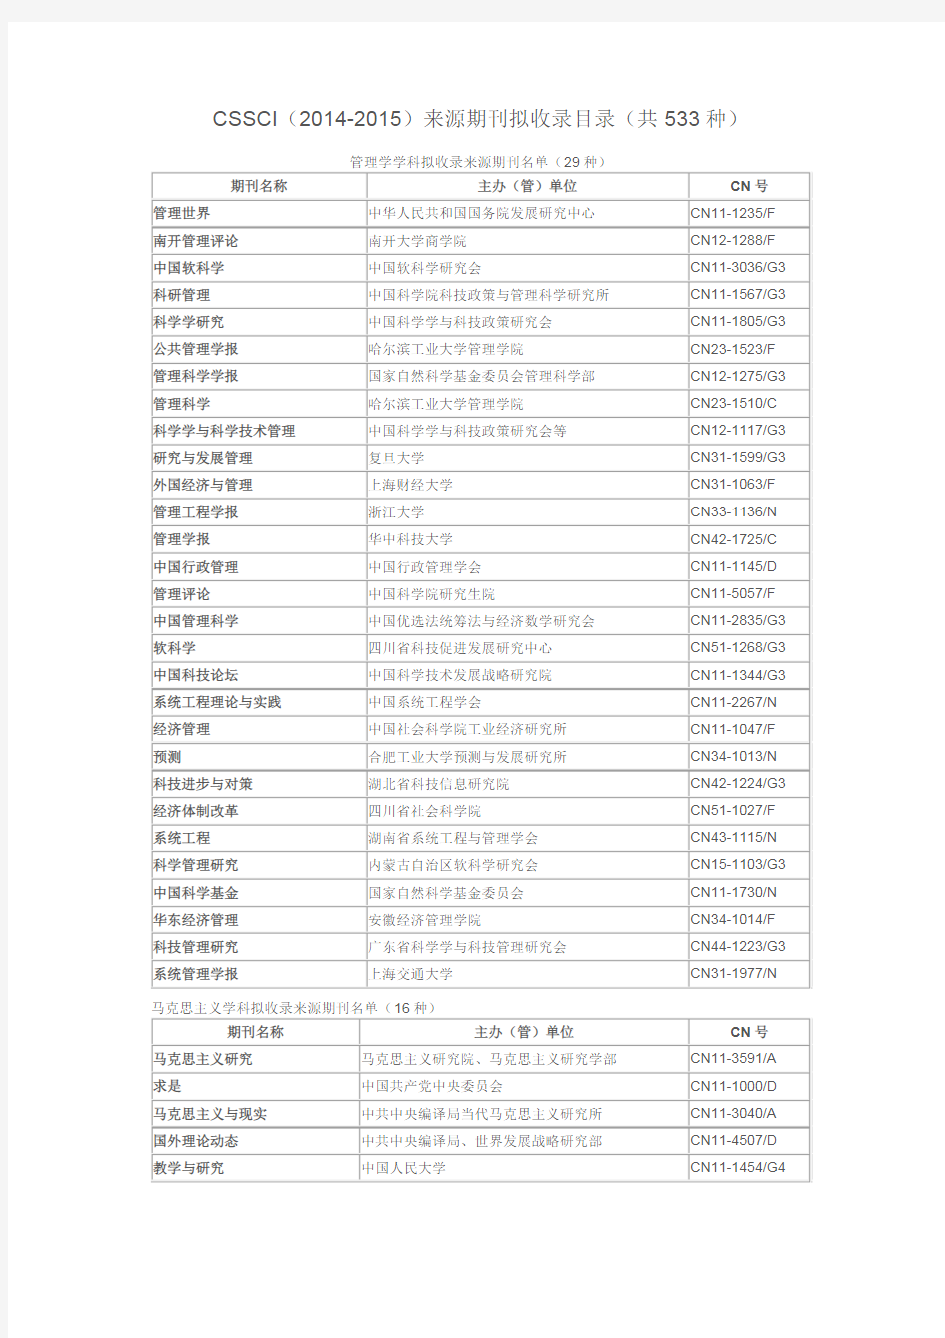 CSSCI  “中文社会科学引文索引”(2014-2015)